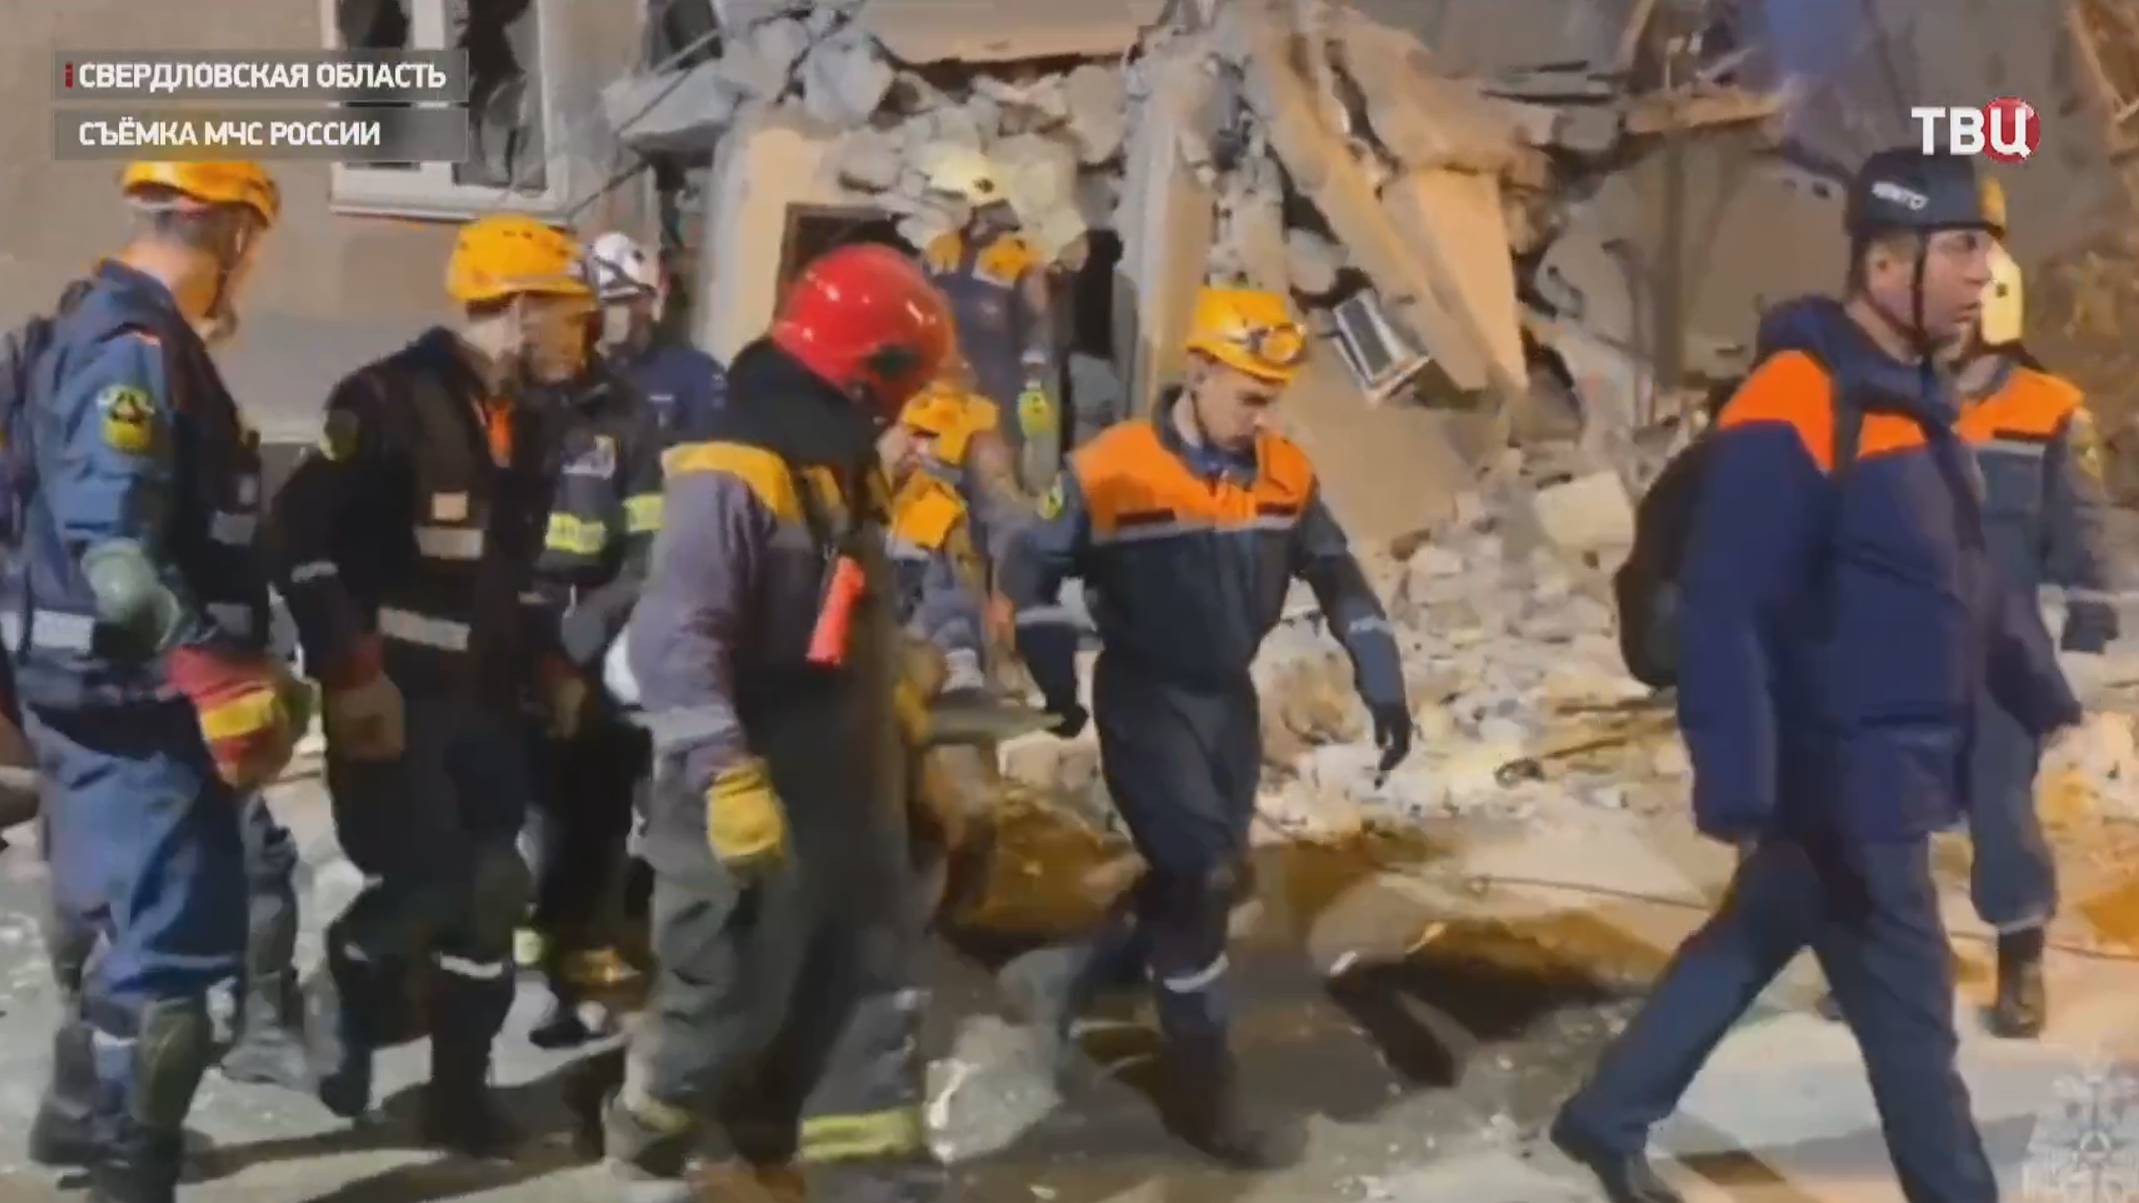 В Нижнем Тагиле завершены поисково-спасательные работы в обрушившемся доме / События на ТВЦ